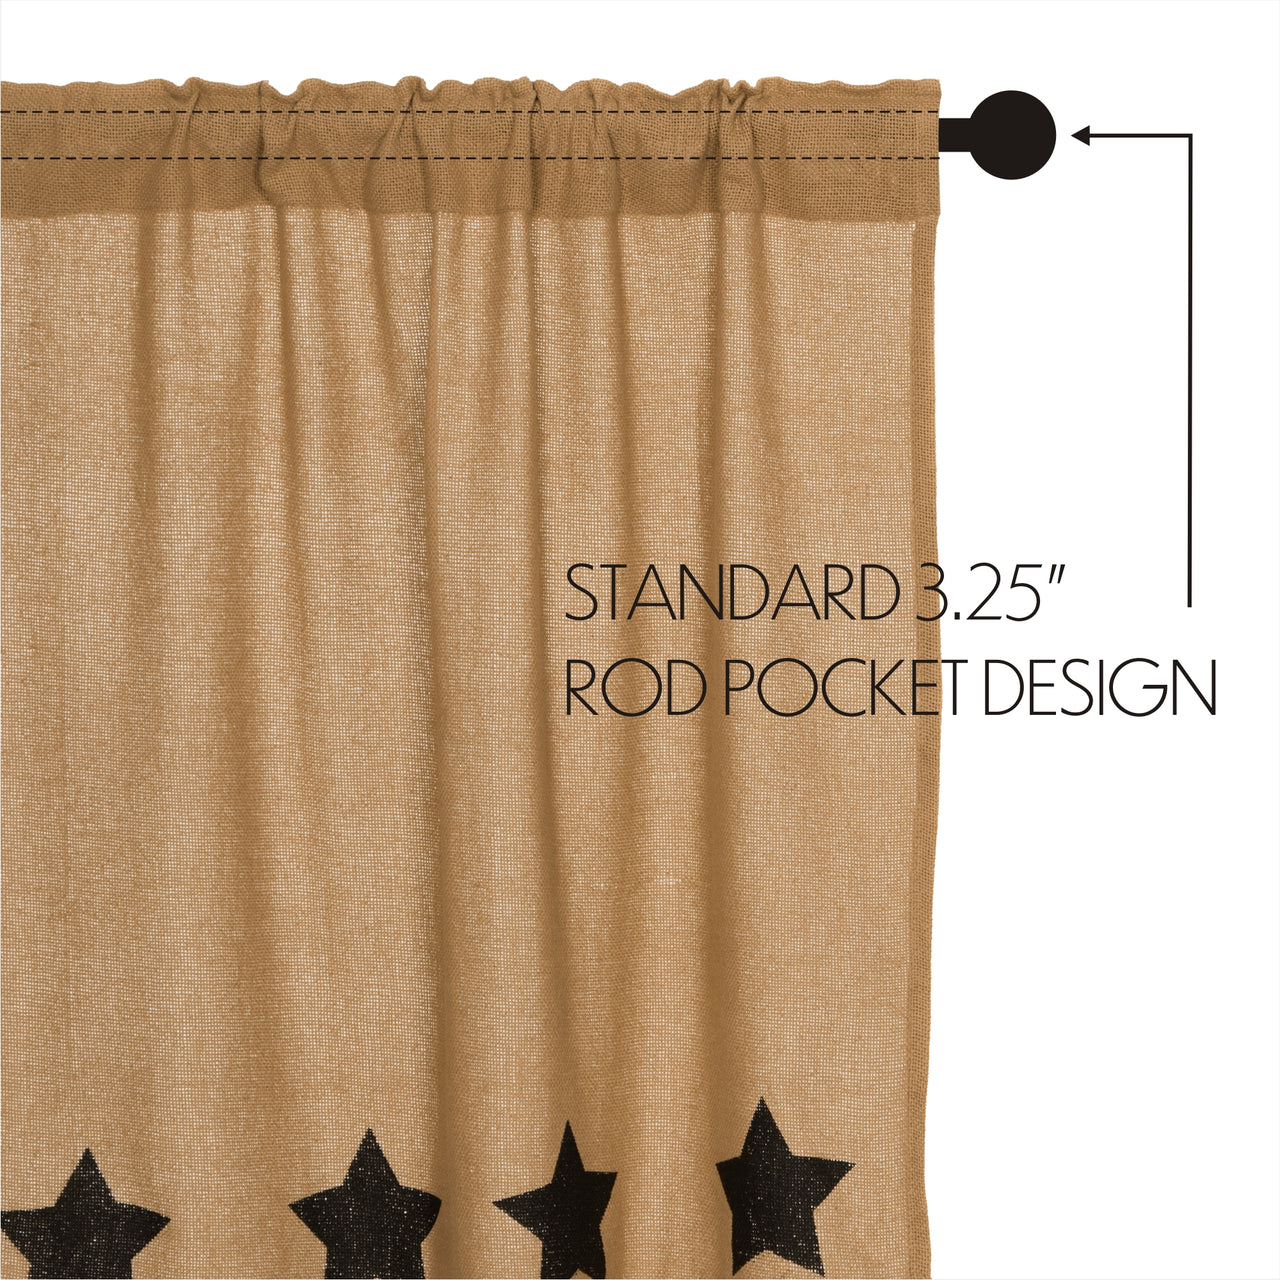 Burlap w/Black Stencil Stars Tier Curtain Set of 2 L24xW36